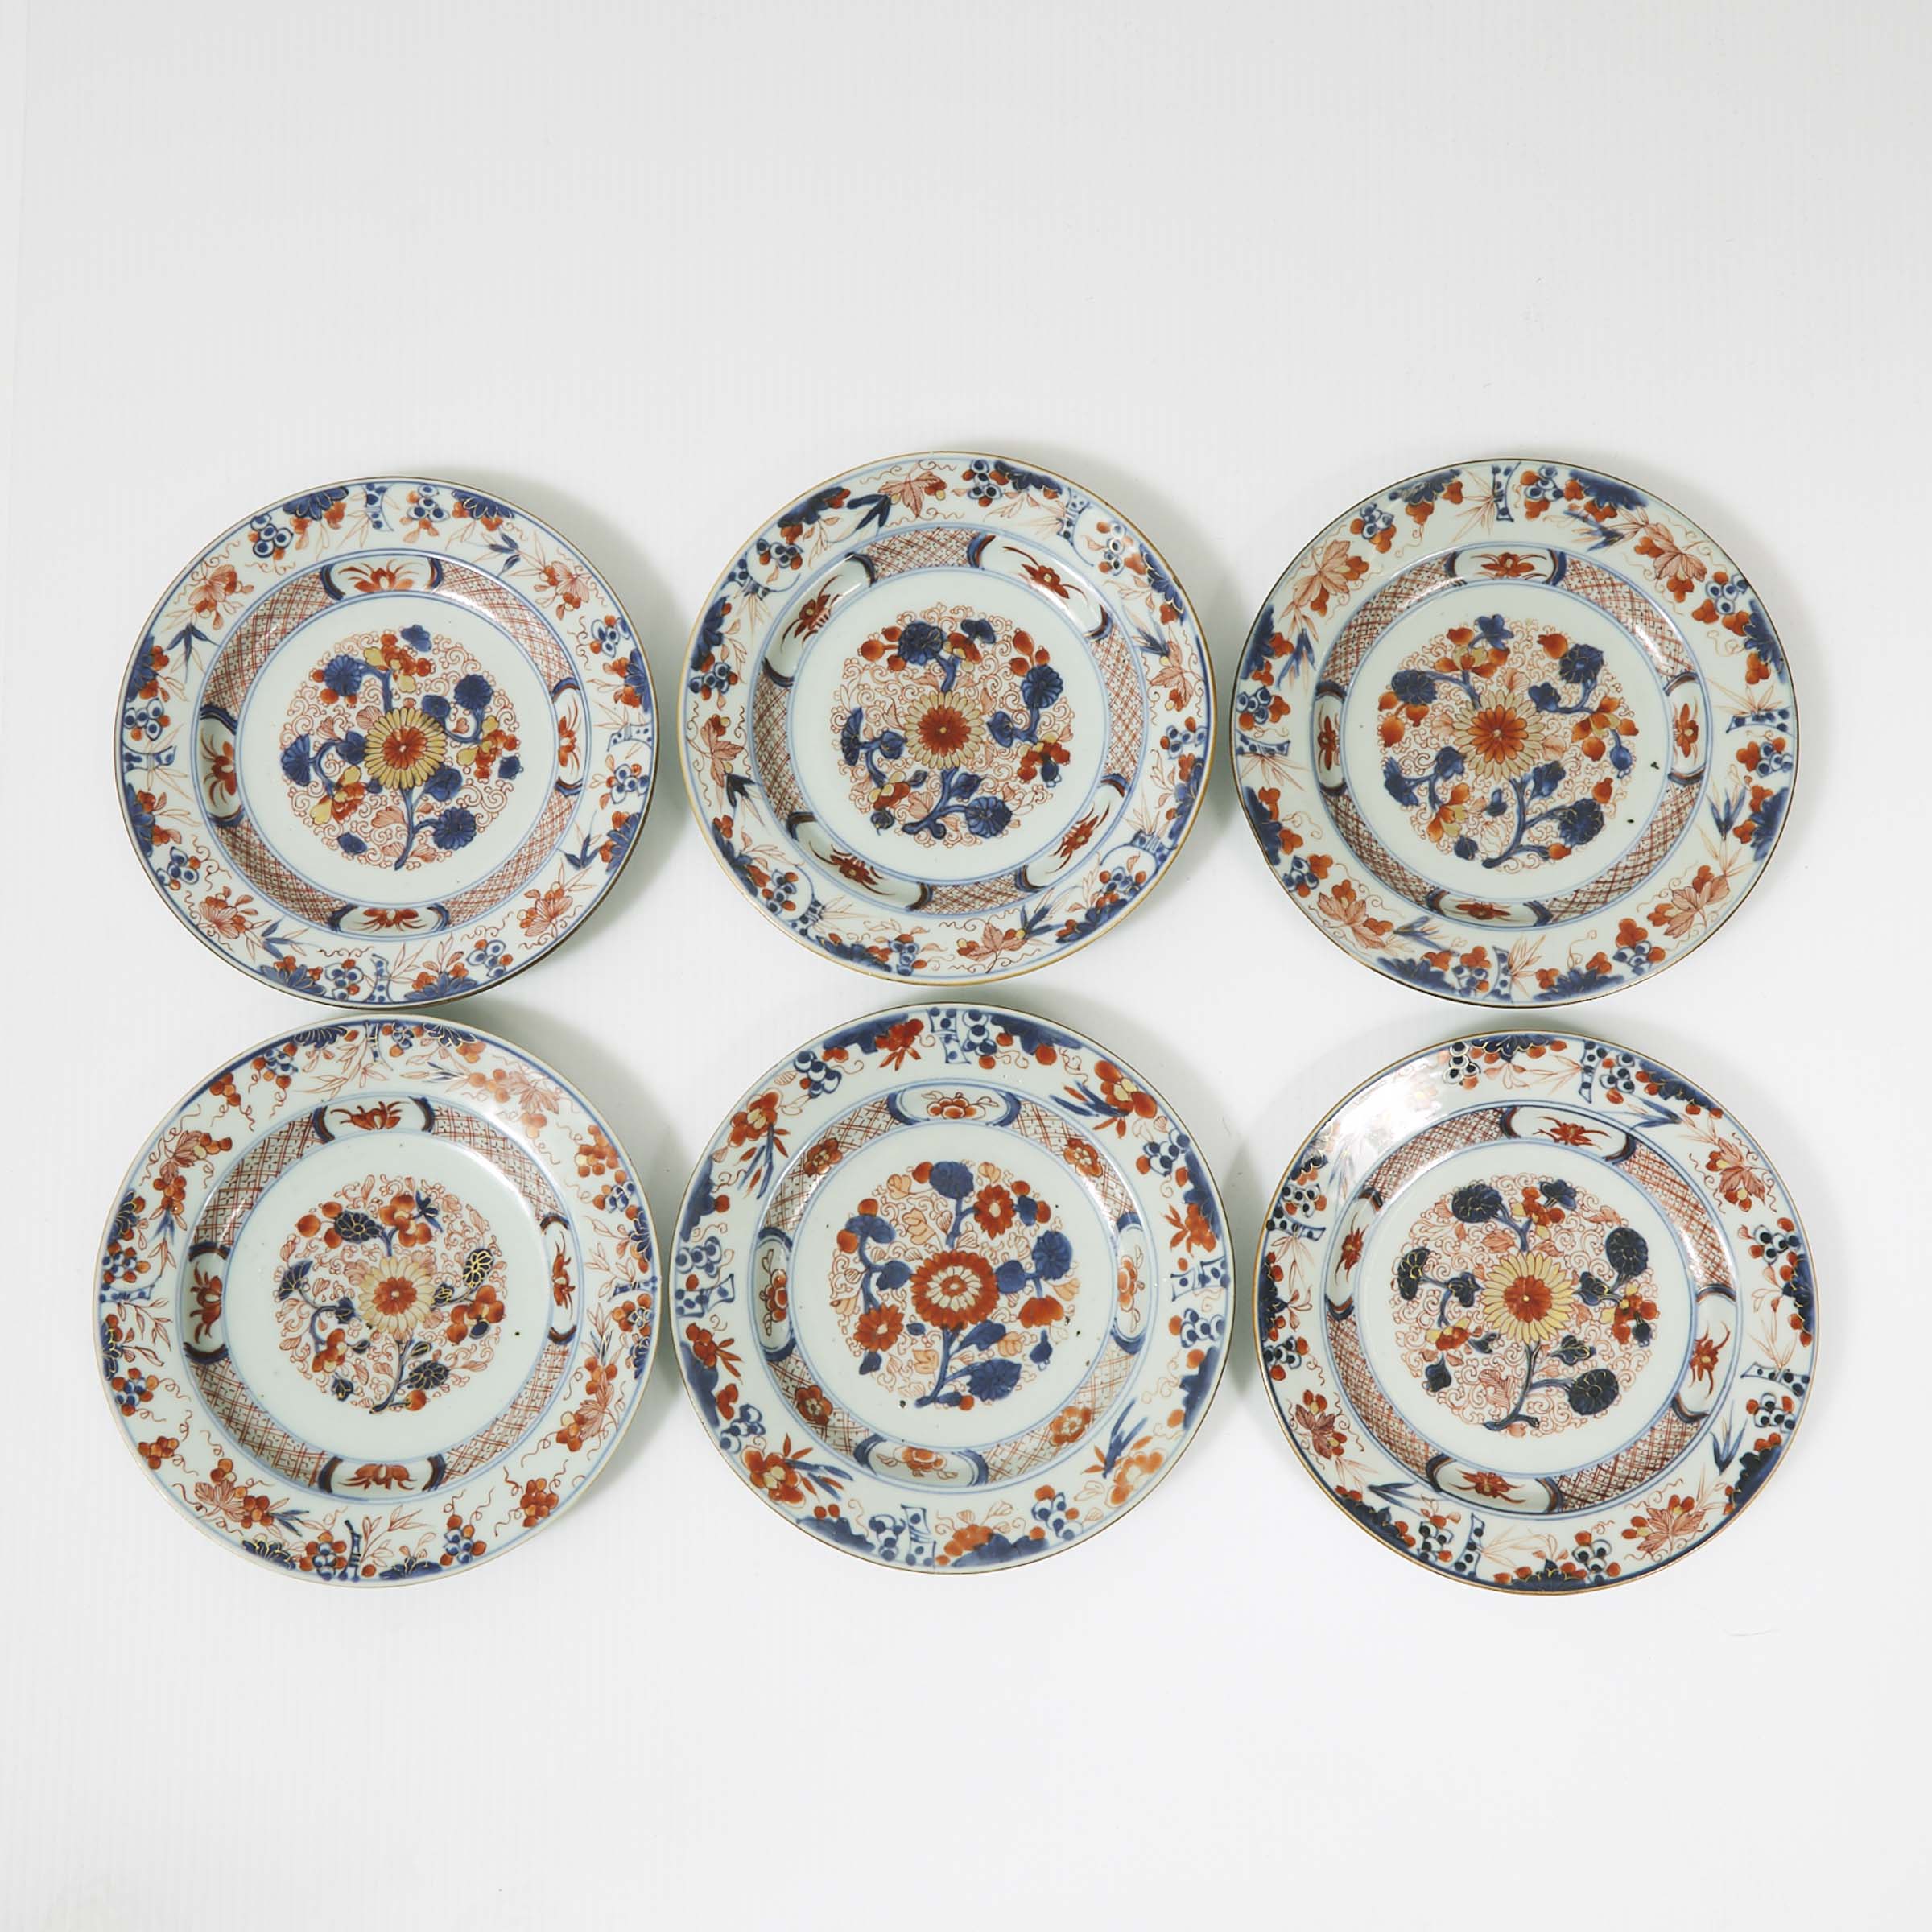 A Set of Six Chinese Imari Plates, Kangxi Period, 17th/18th Century